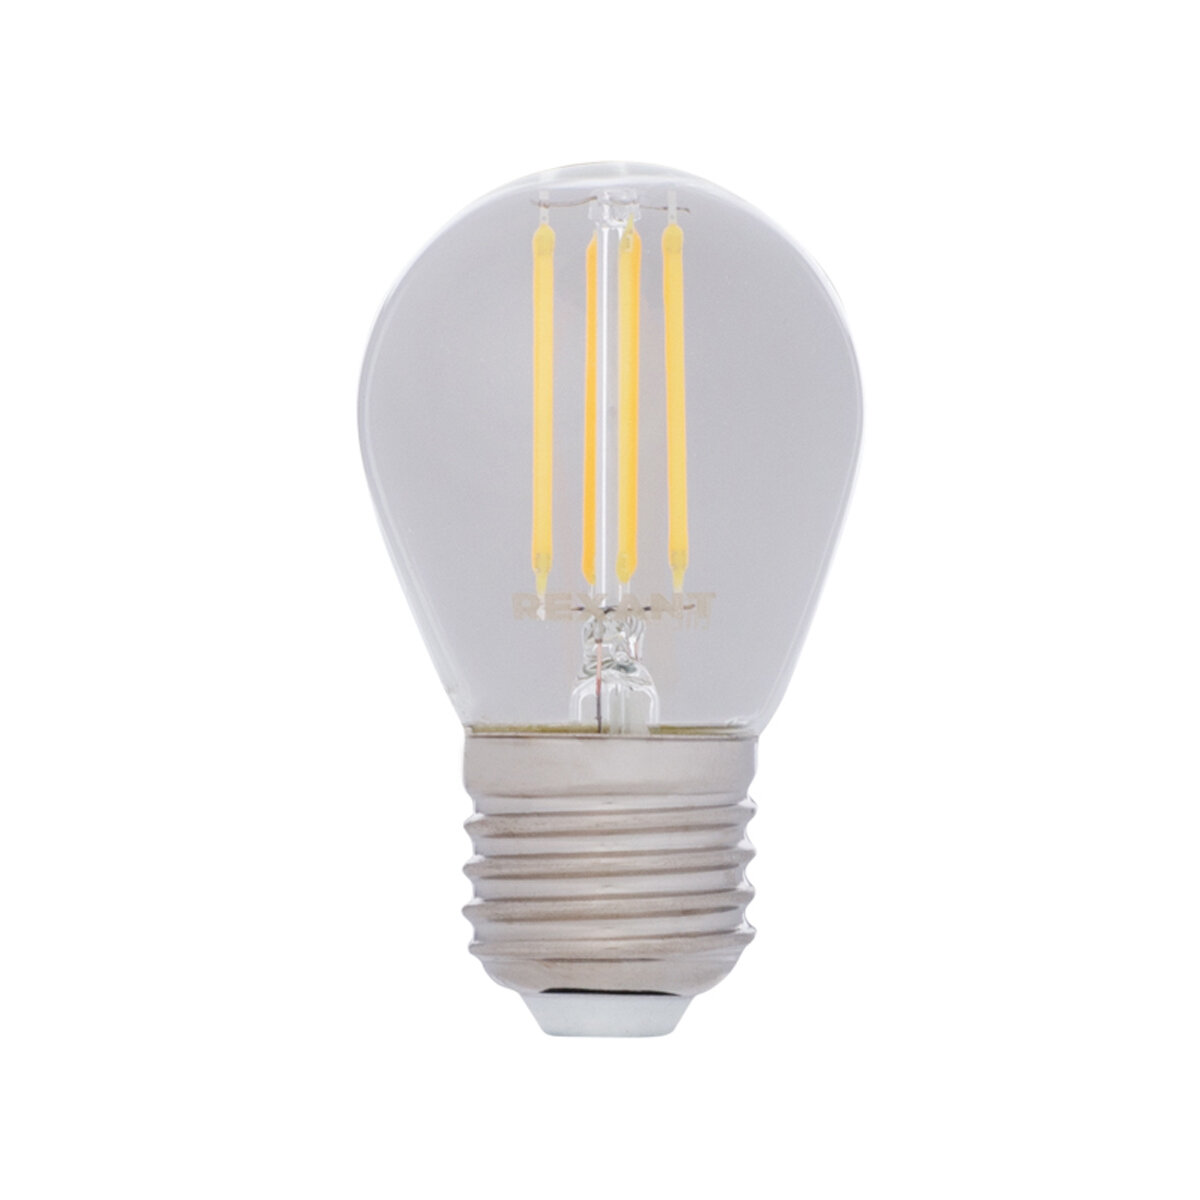 СДС ООО Лампа филаментная Rexant Шарик GL45, 7,5 Вт, 4000 К, Е27, нейтральный свет